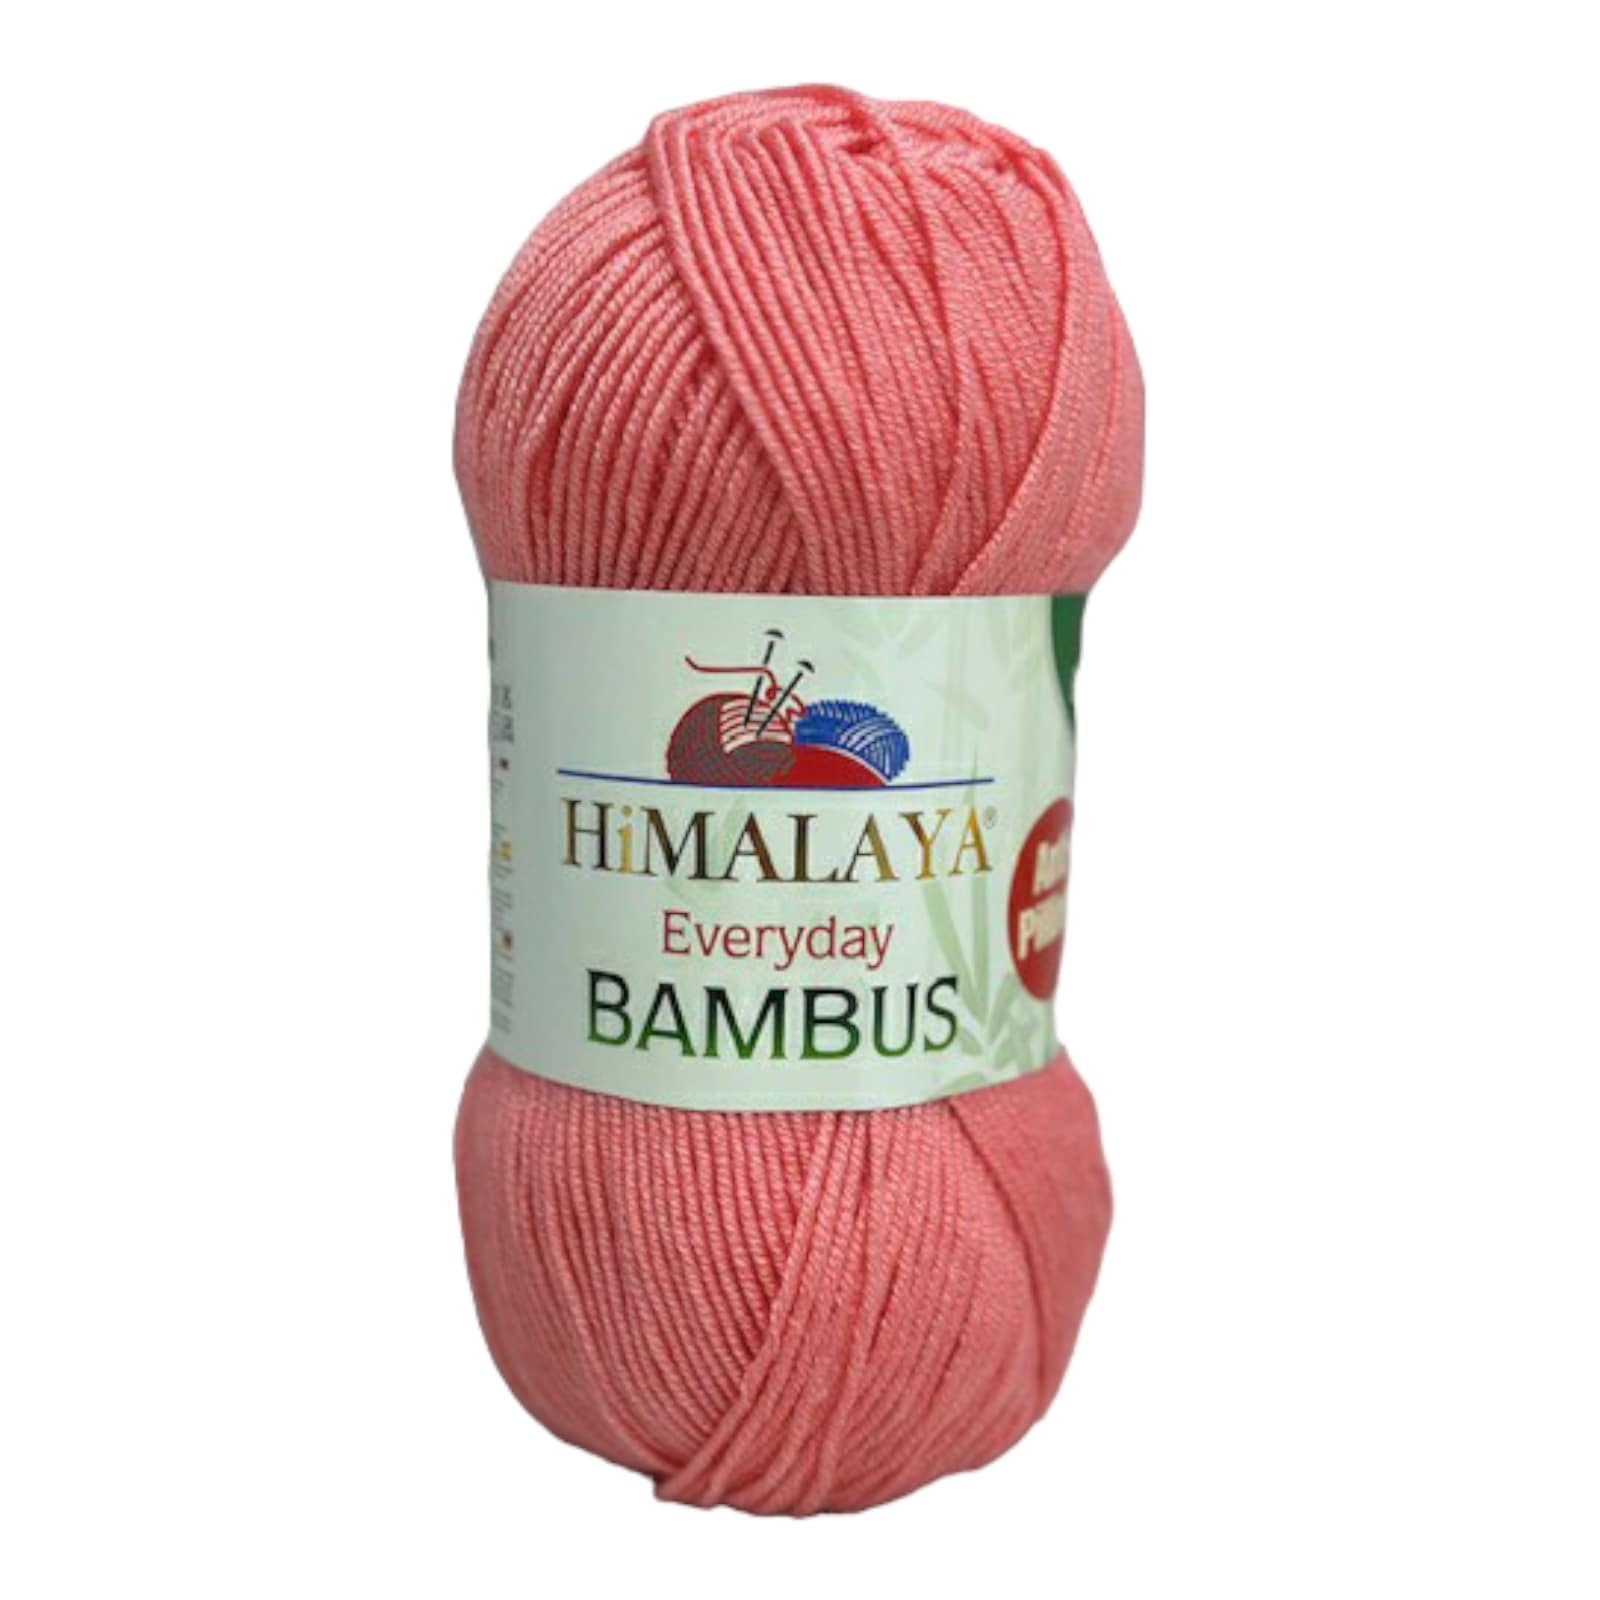 Himalaya Bambus 236-09